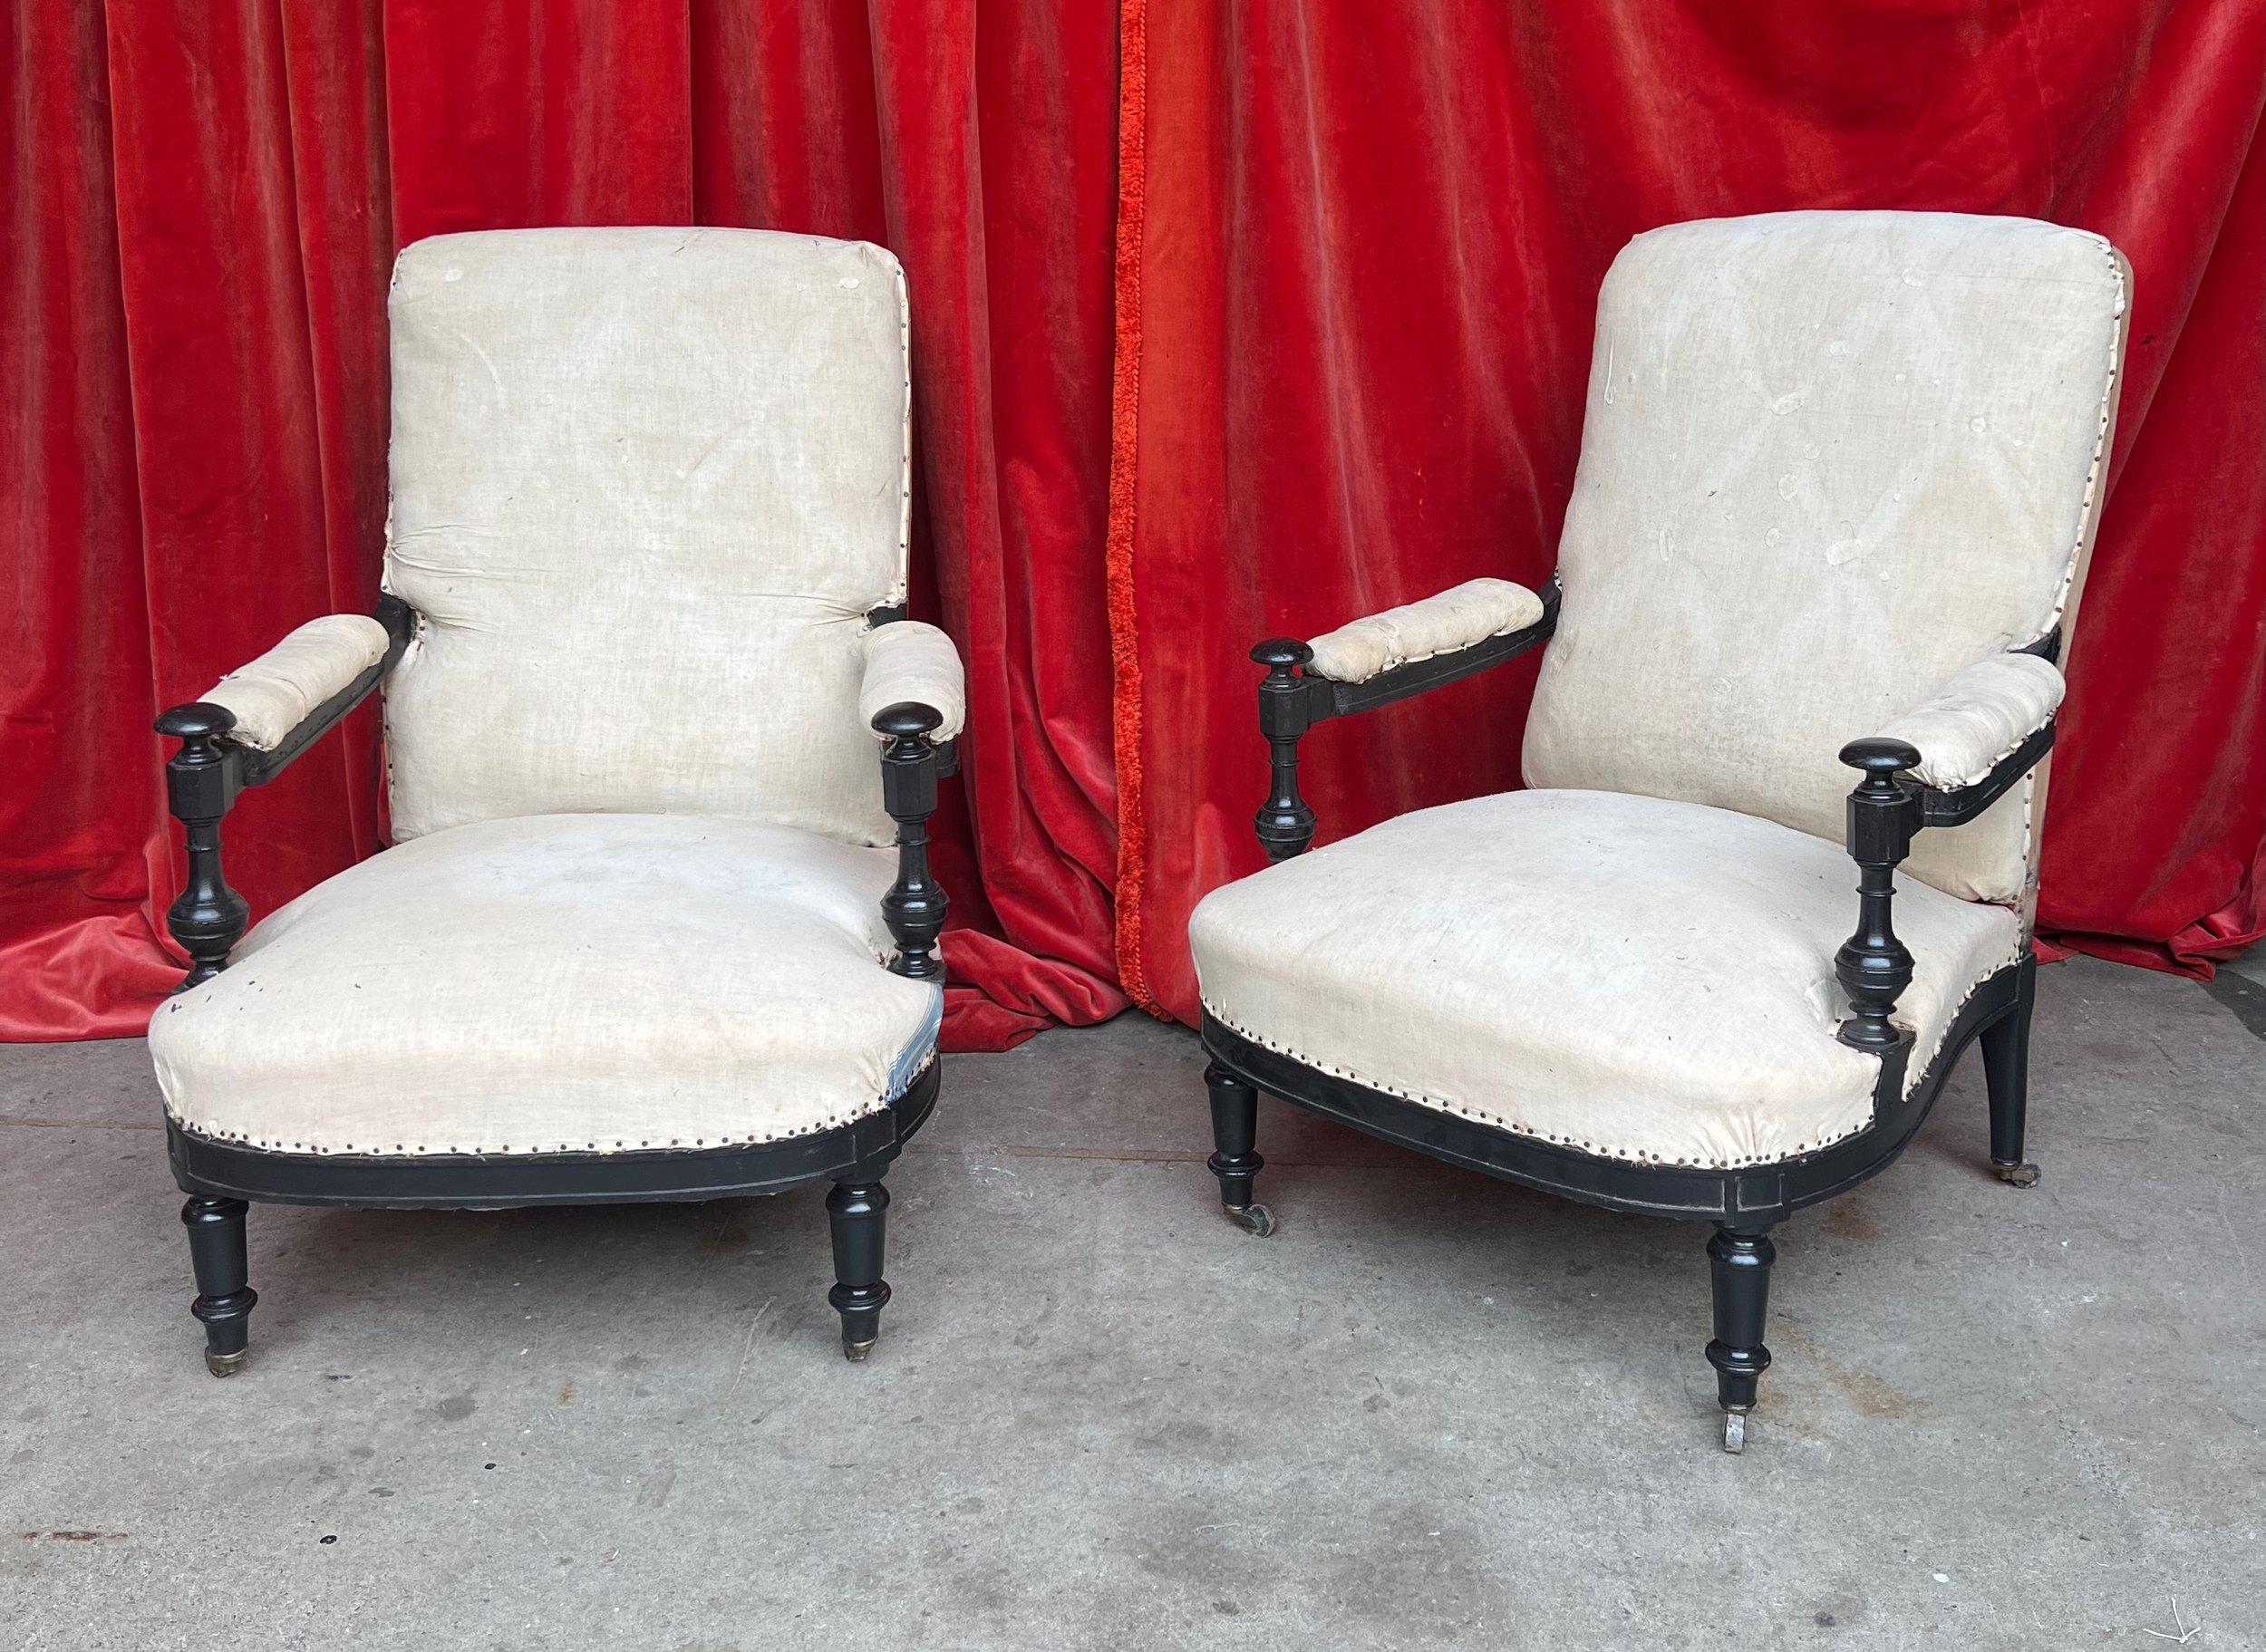 Une extraordinaire paire de fauteuils français Napoléon III, avec des bras en bois apparents et des pieds tournés classiques. Ces chaises du XIXe siècle séduisent par leurs magnifiques détails de bras en fuseau de bois, ajoutant sophistication et